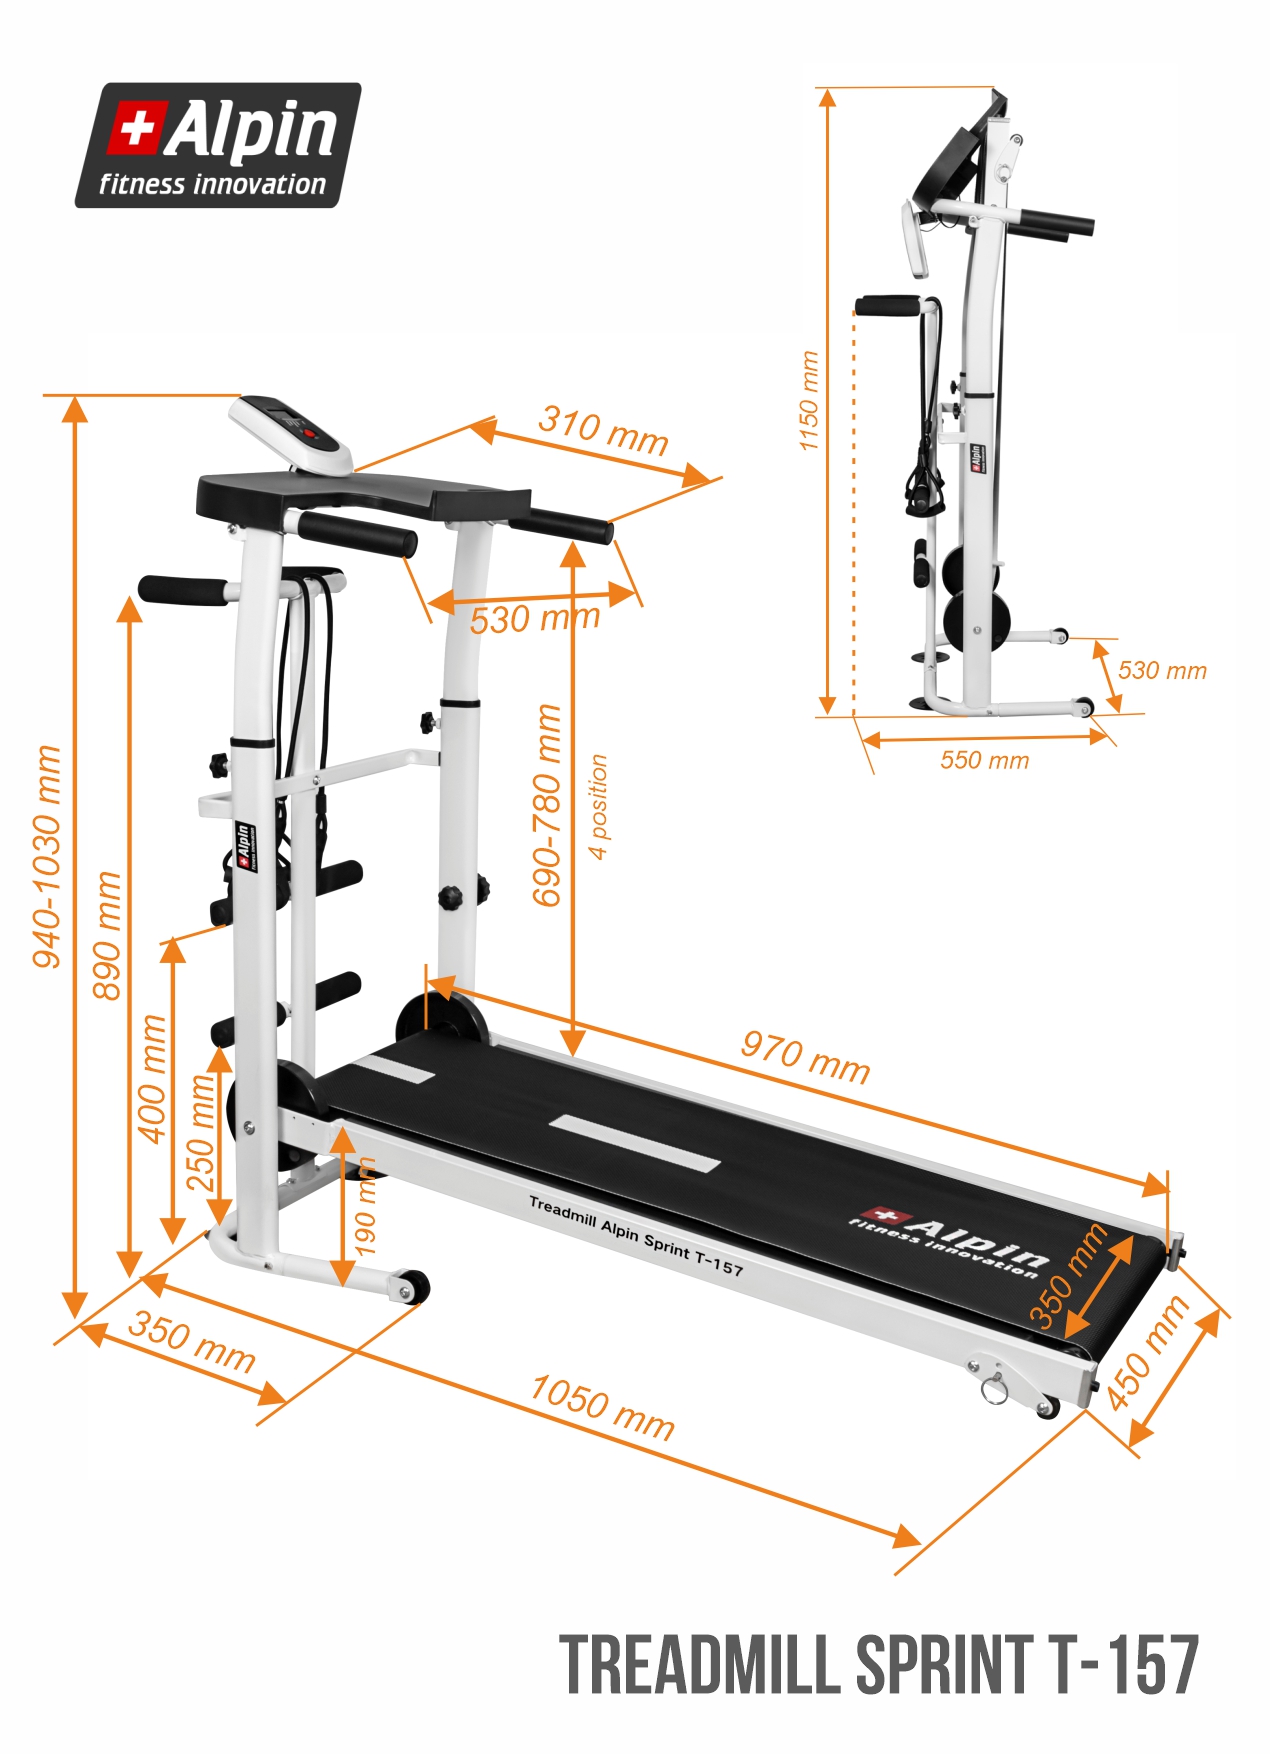 Treadmill_Alpin_Sprint_T-157_размеры.jpg